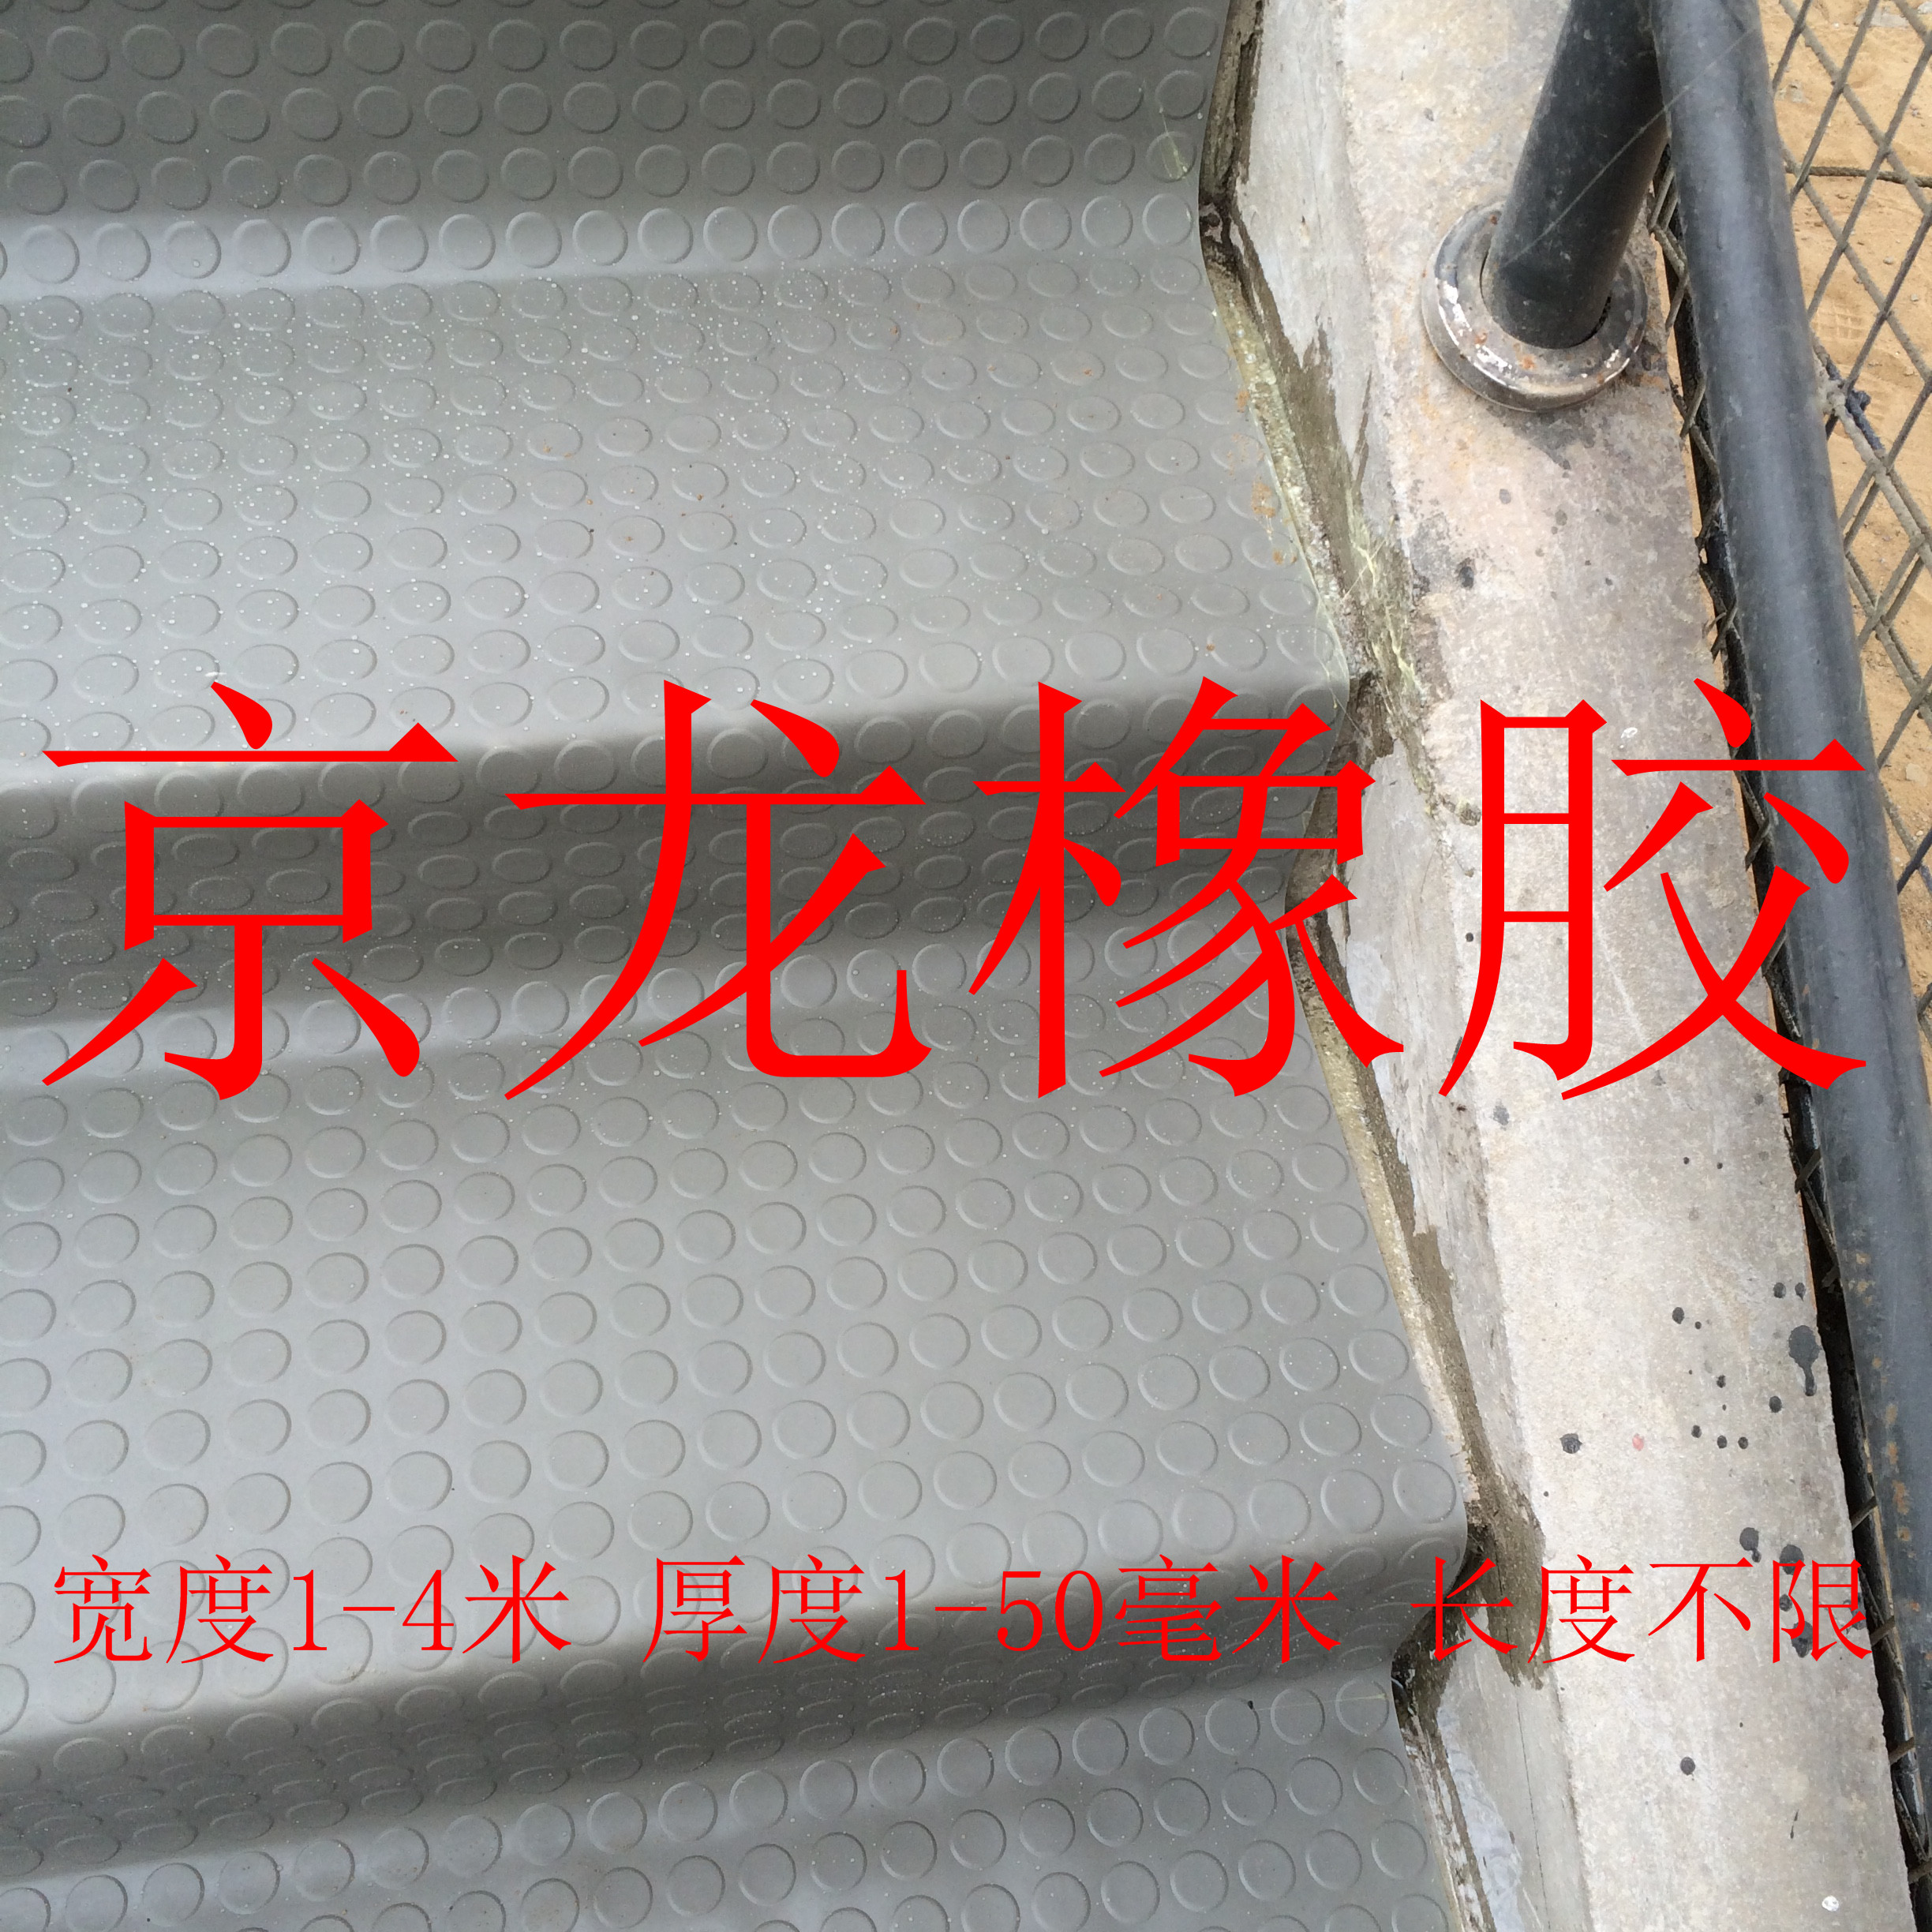 3毫米圆扣防滑橡胶板 河间市京龙建筑材料有限公司